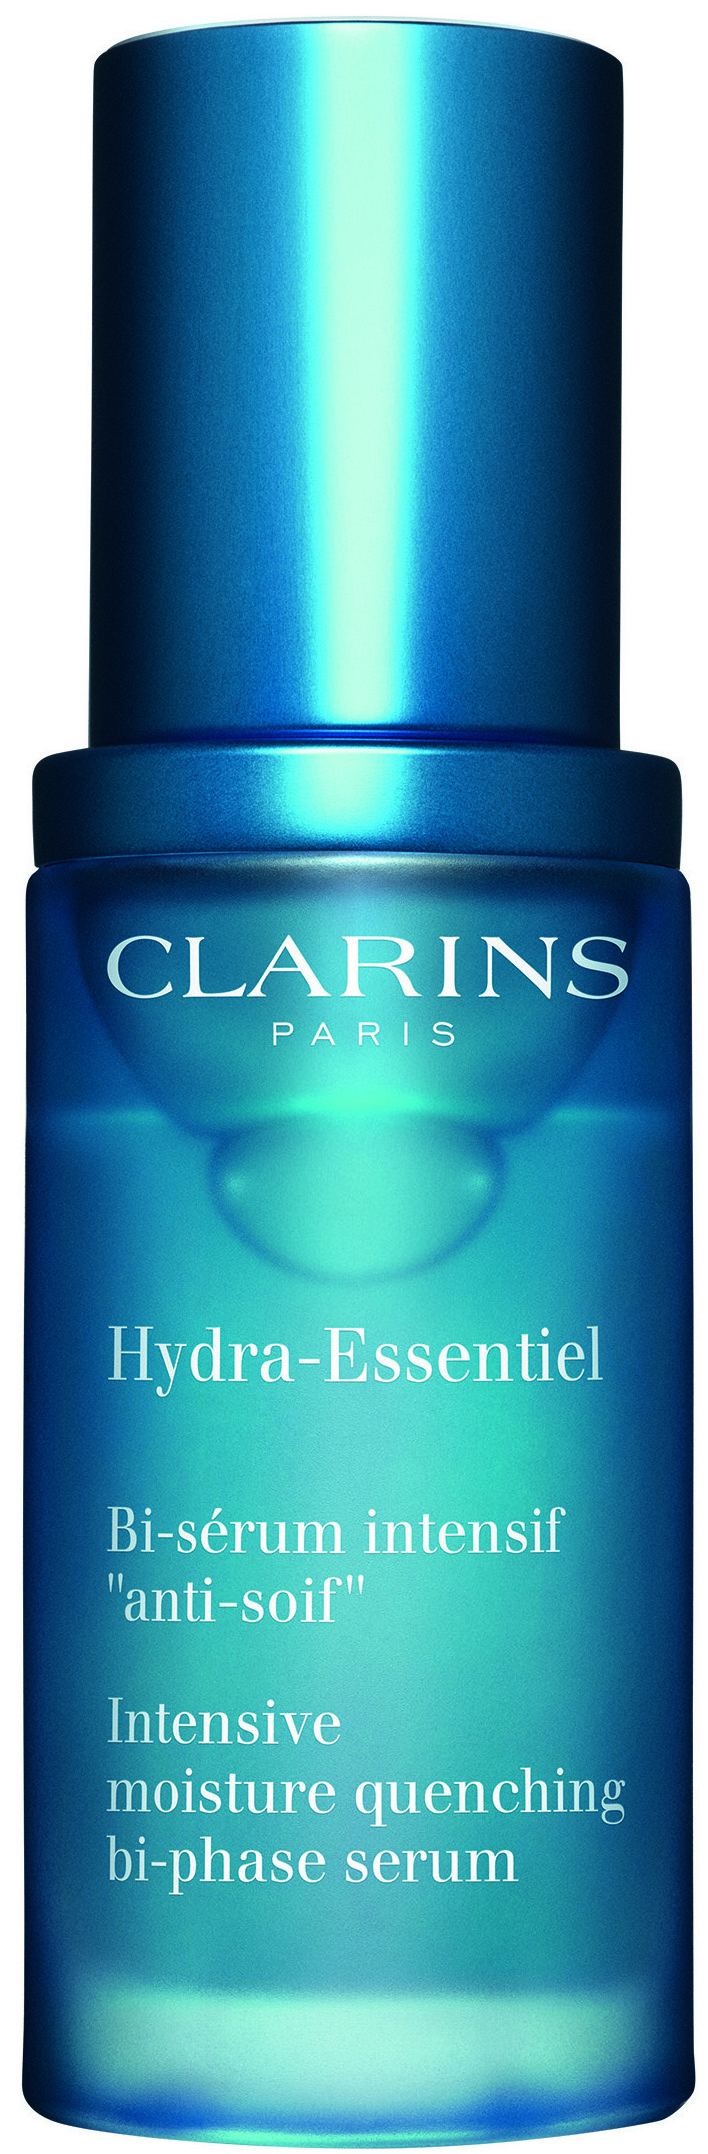 hydra essentiel clarins serum